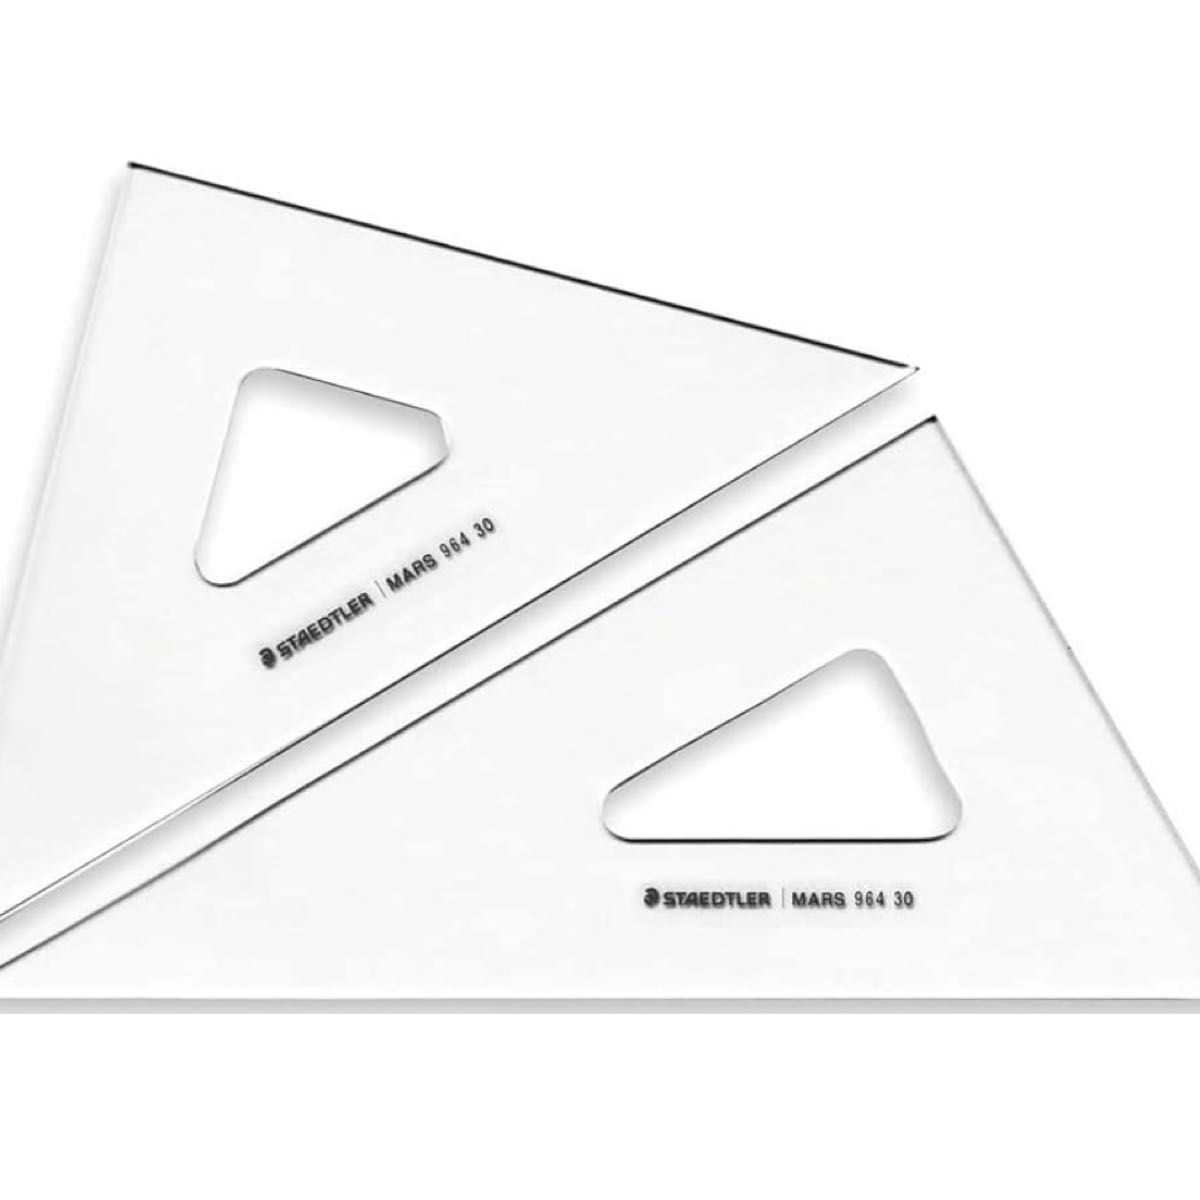 ステッドラー(STAEDTLER) 三角定規 製図セット マルス30cm 964